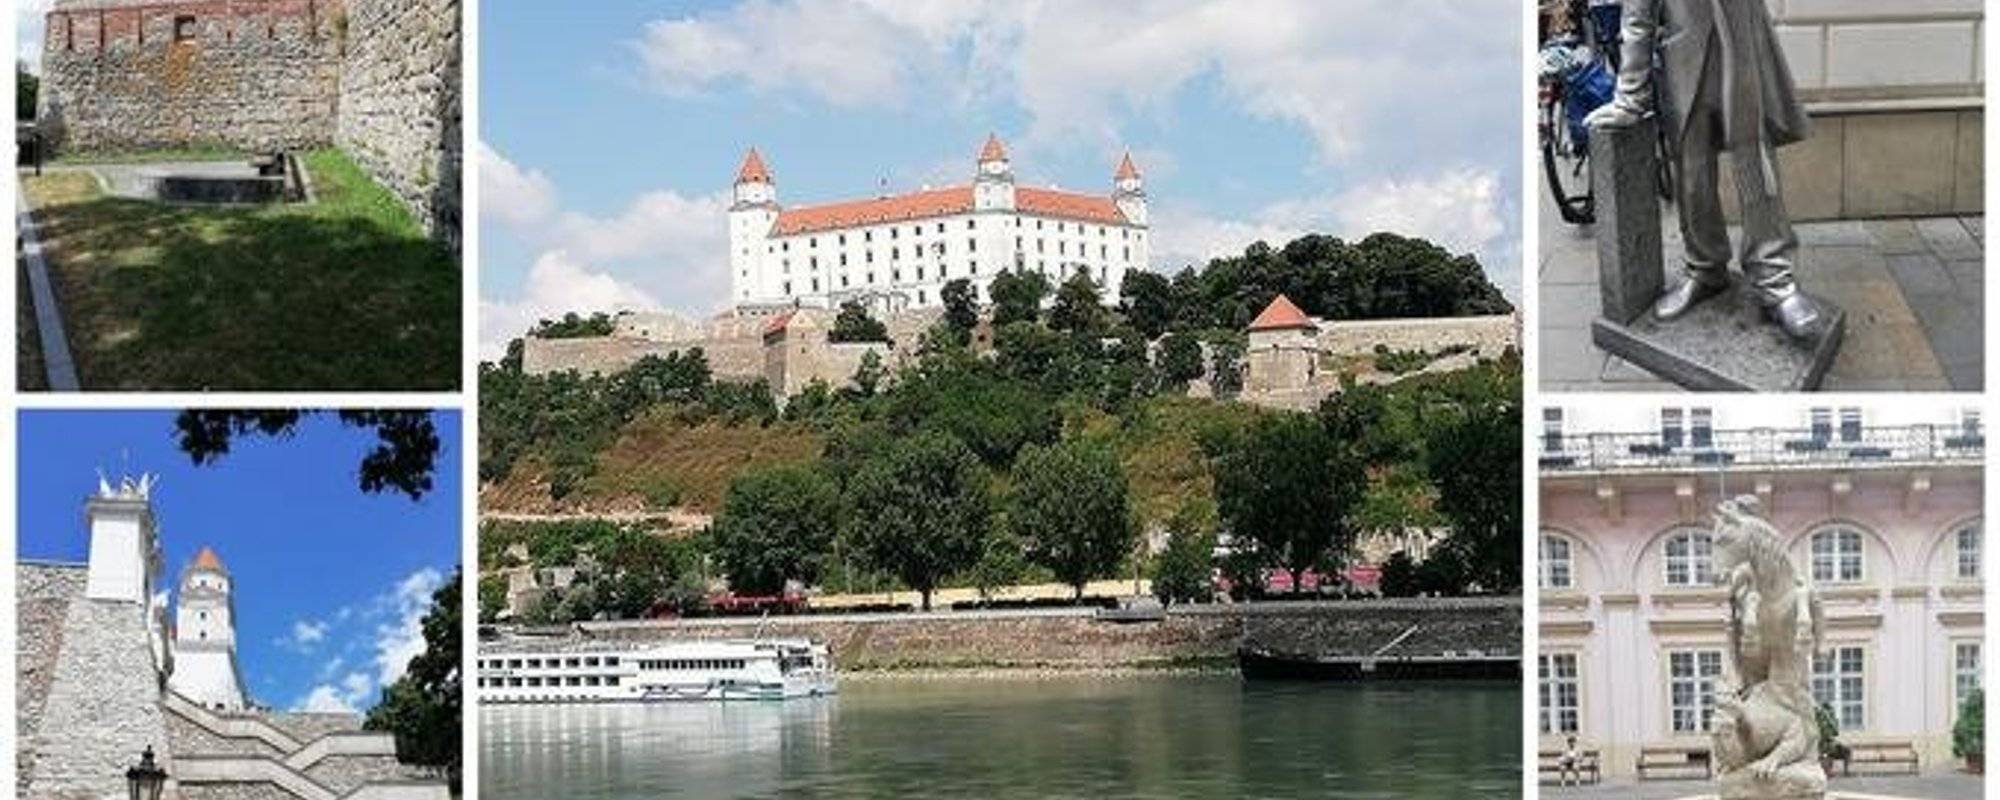 Bratislava - Part 5 - The Castle